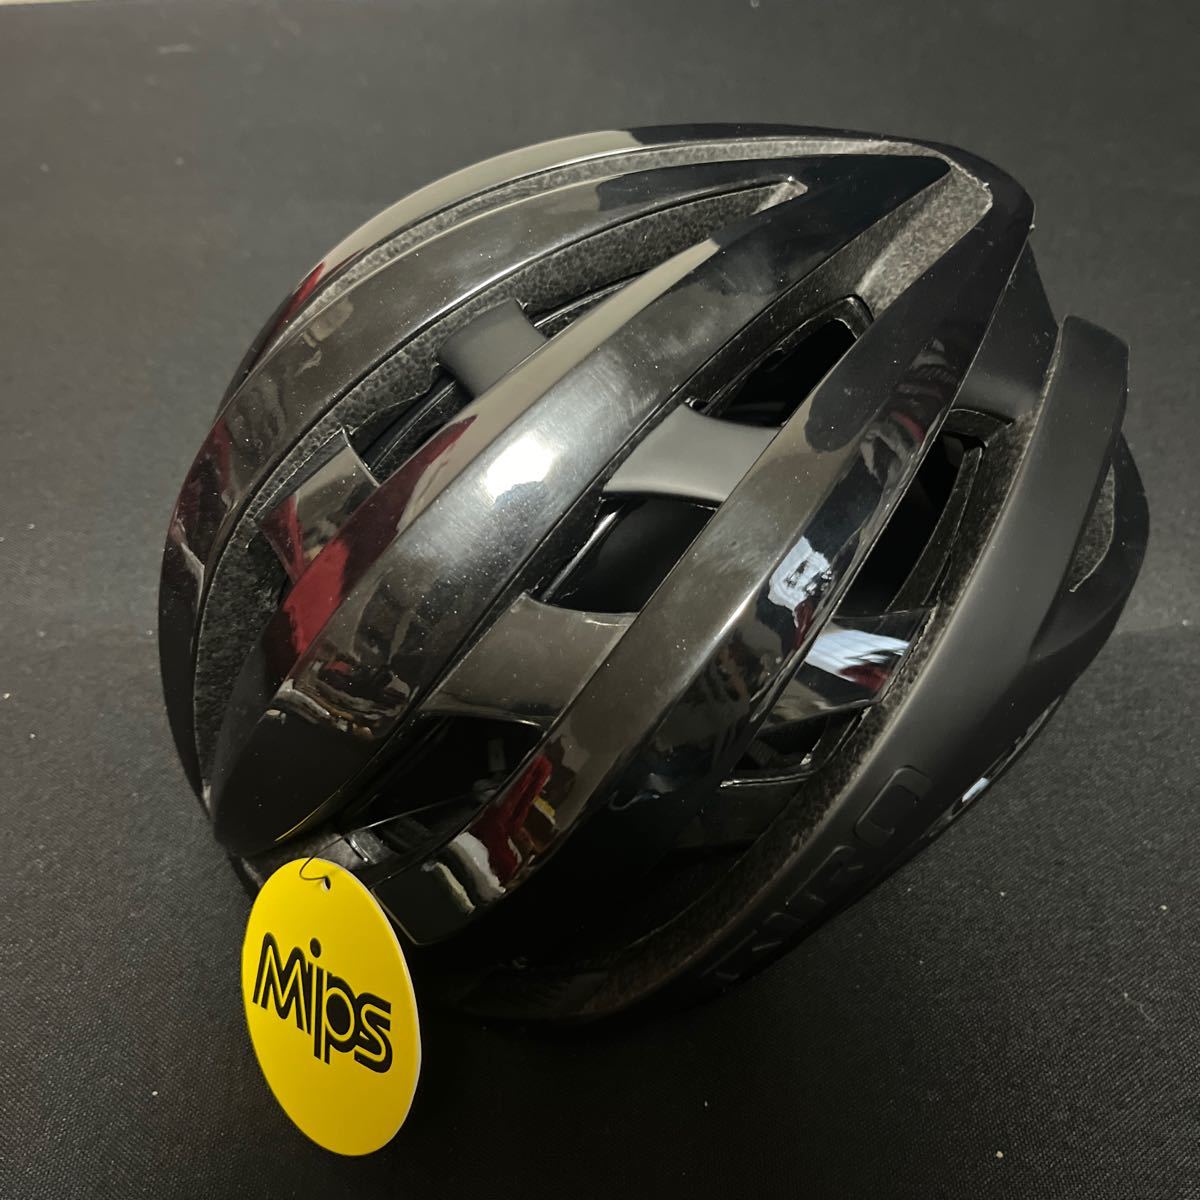 新品ジロ イーサーMIPS S 51-55cm 266g ブラック GIRO AETHER MIPS GCN ヘルメット サイクリング グローバルフィット_画像2